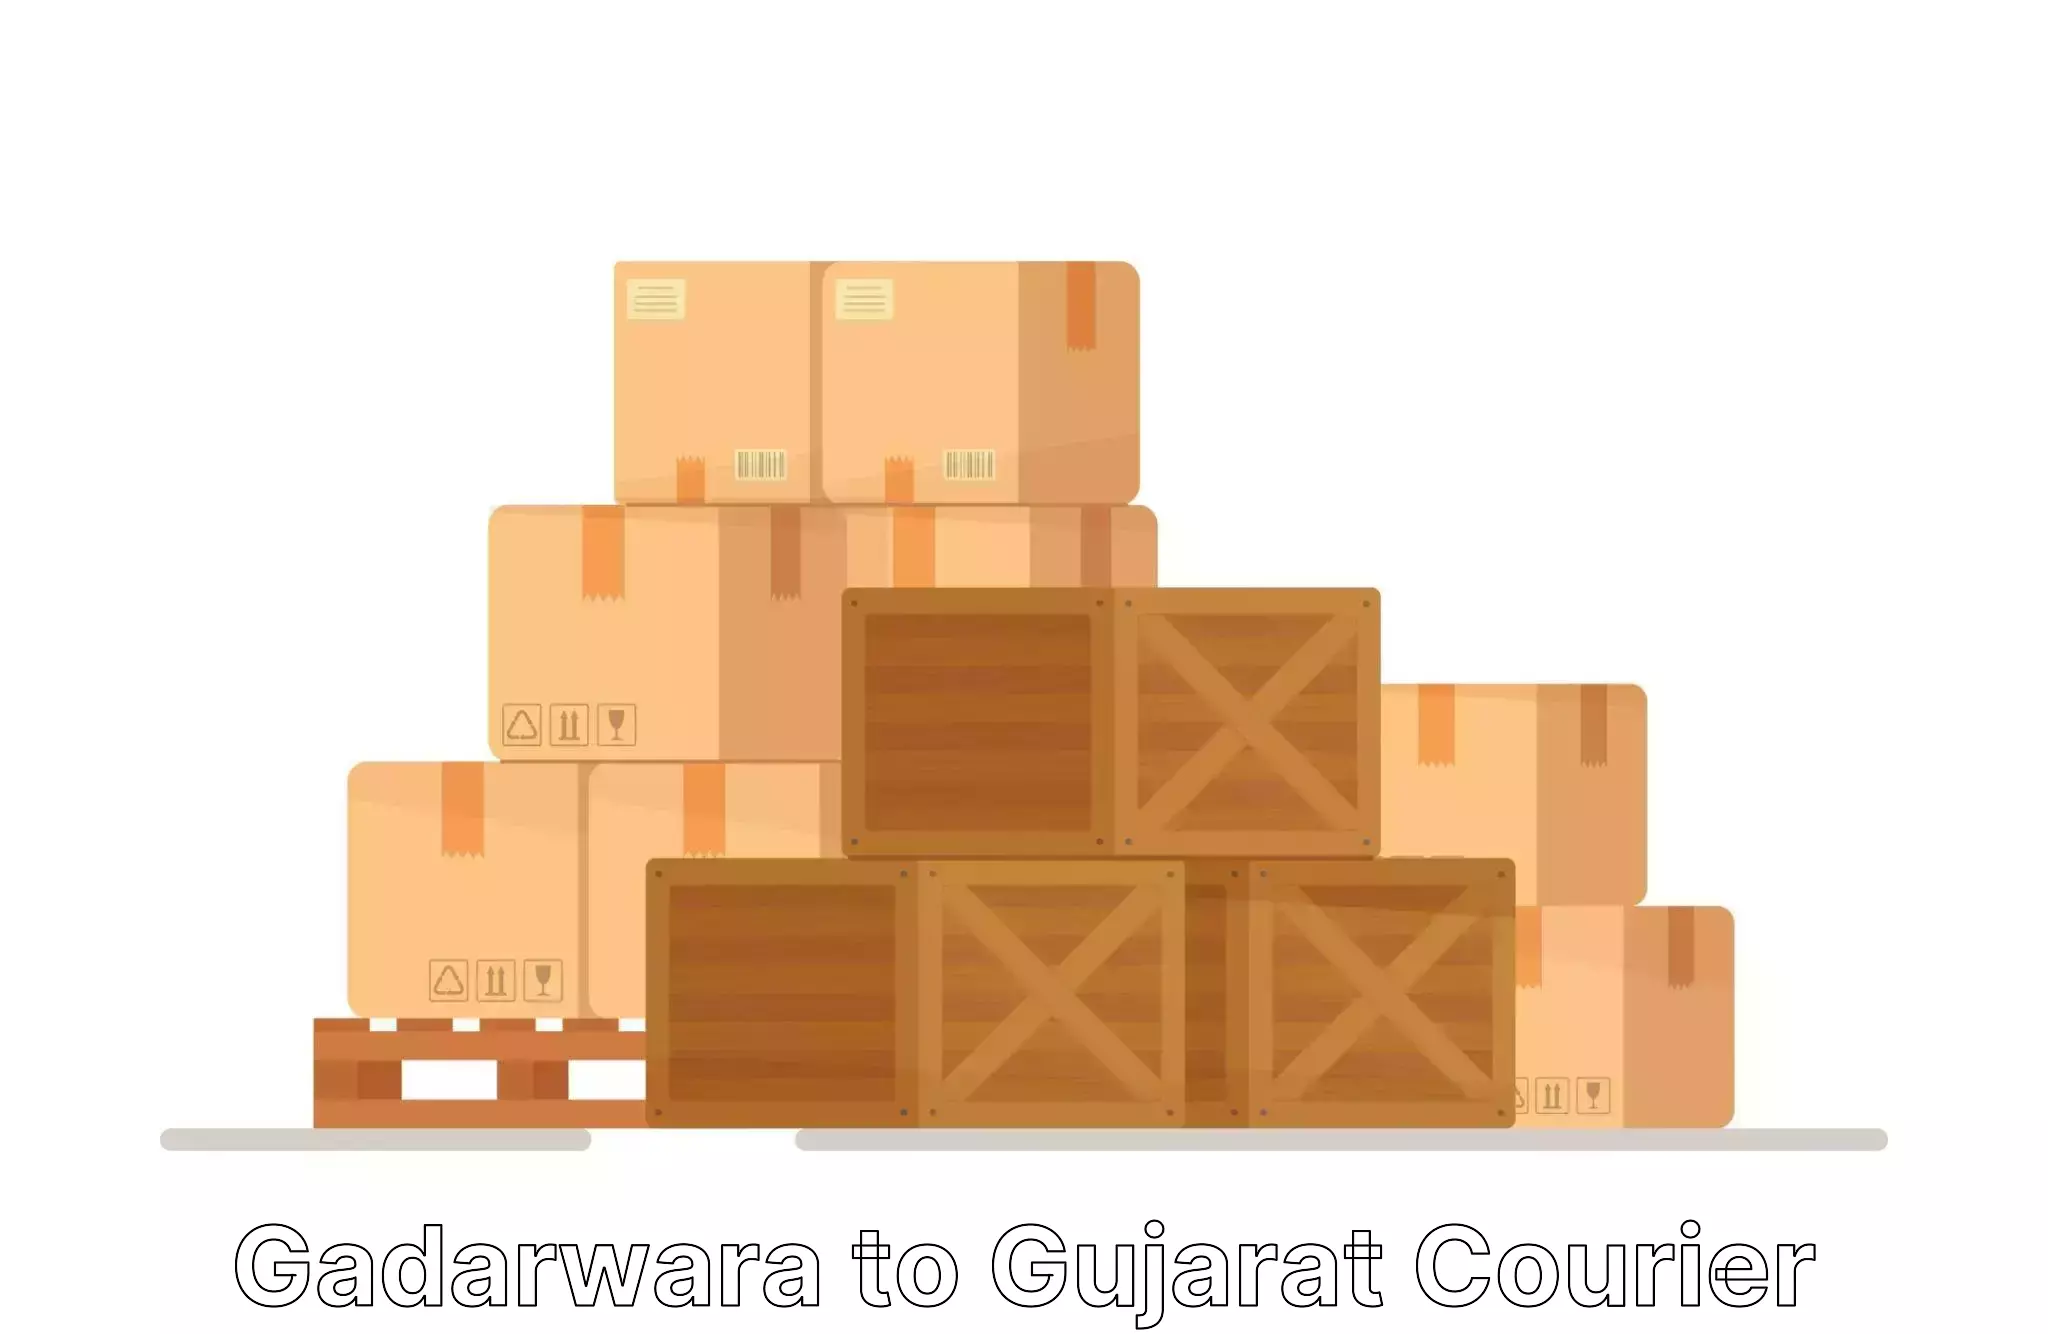 Furniture moving assistance Gadarwara to Patan